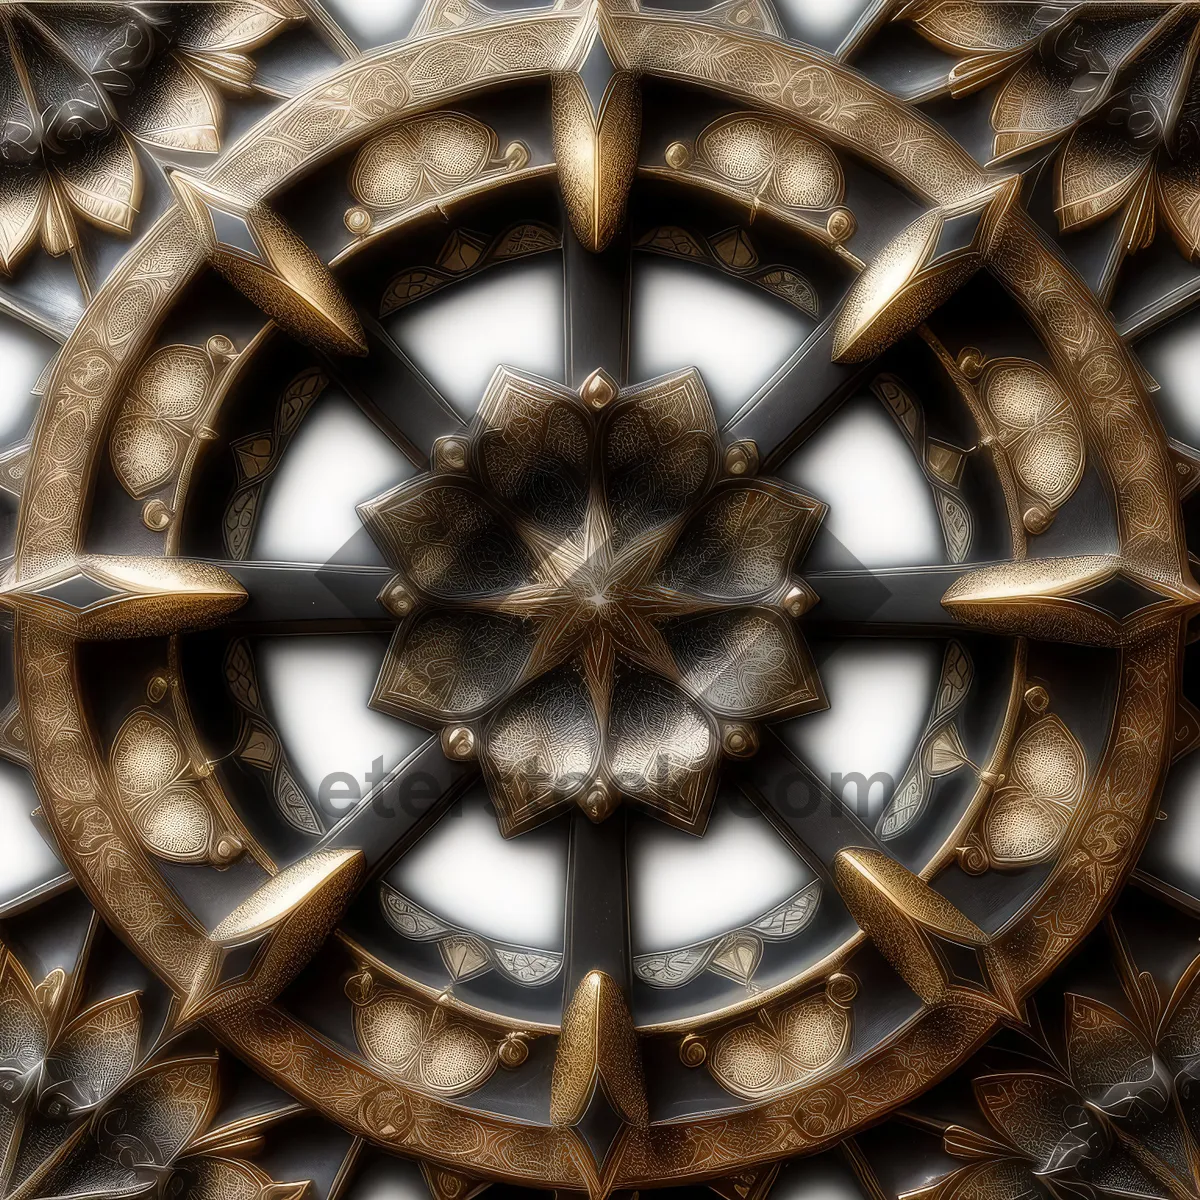 Picture of Woven Rattan Dome: Artistic Window Design